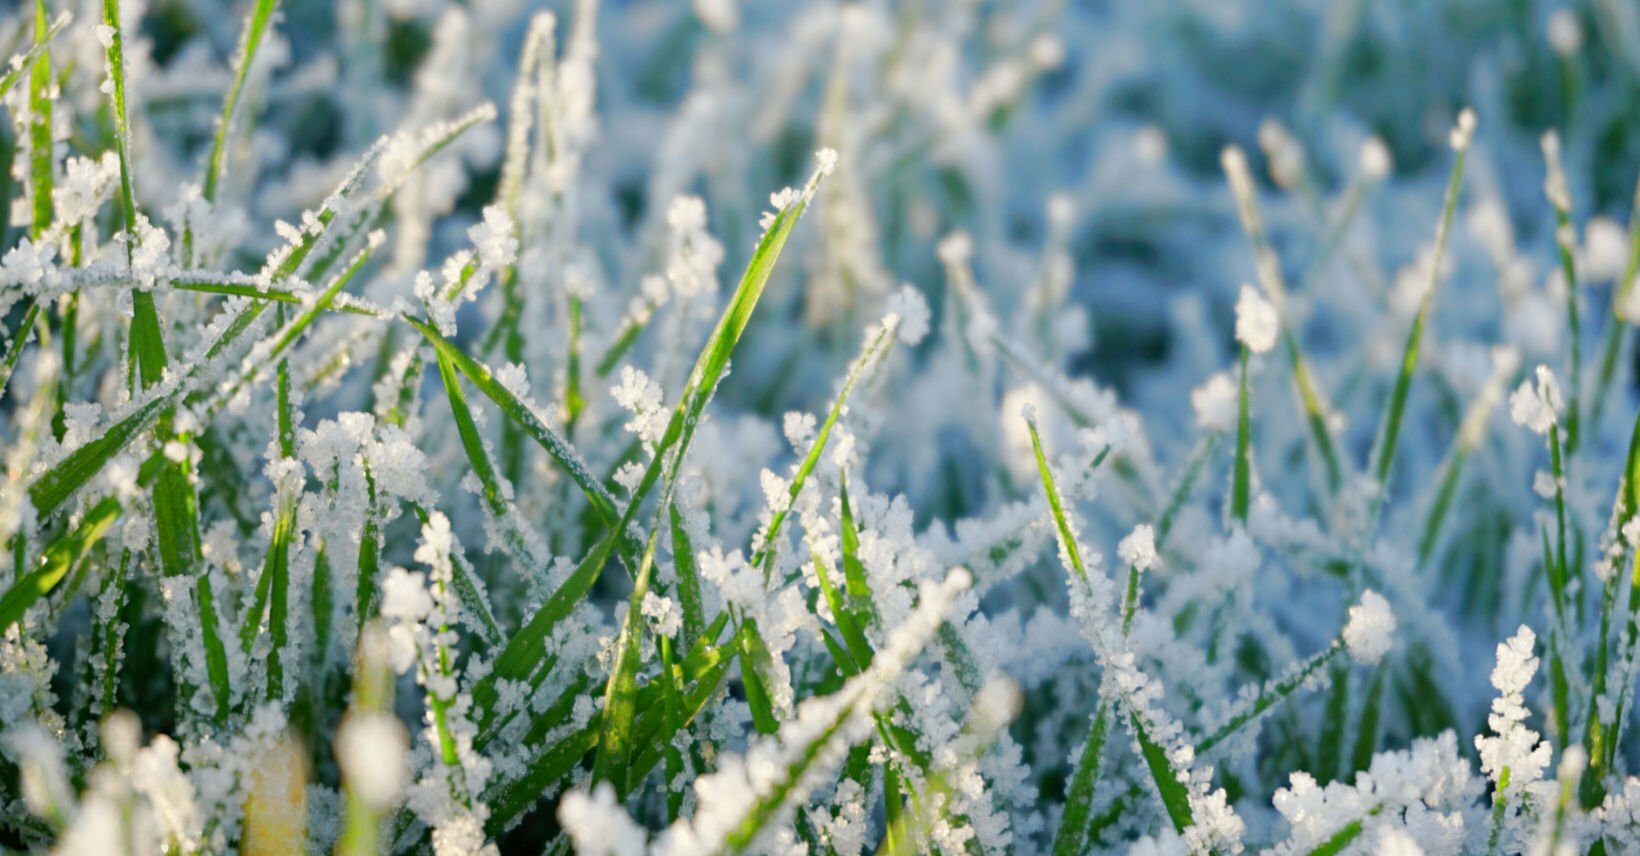 Wintery scene in a garden in January frost